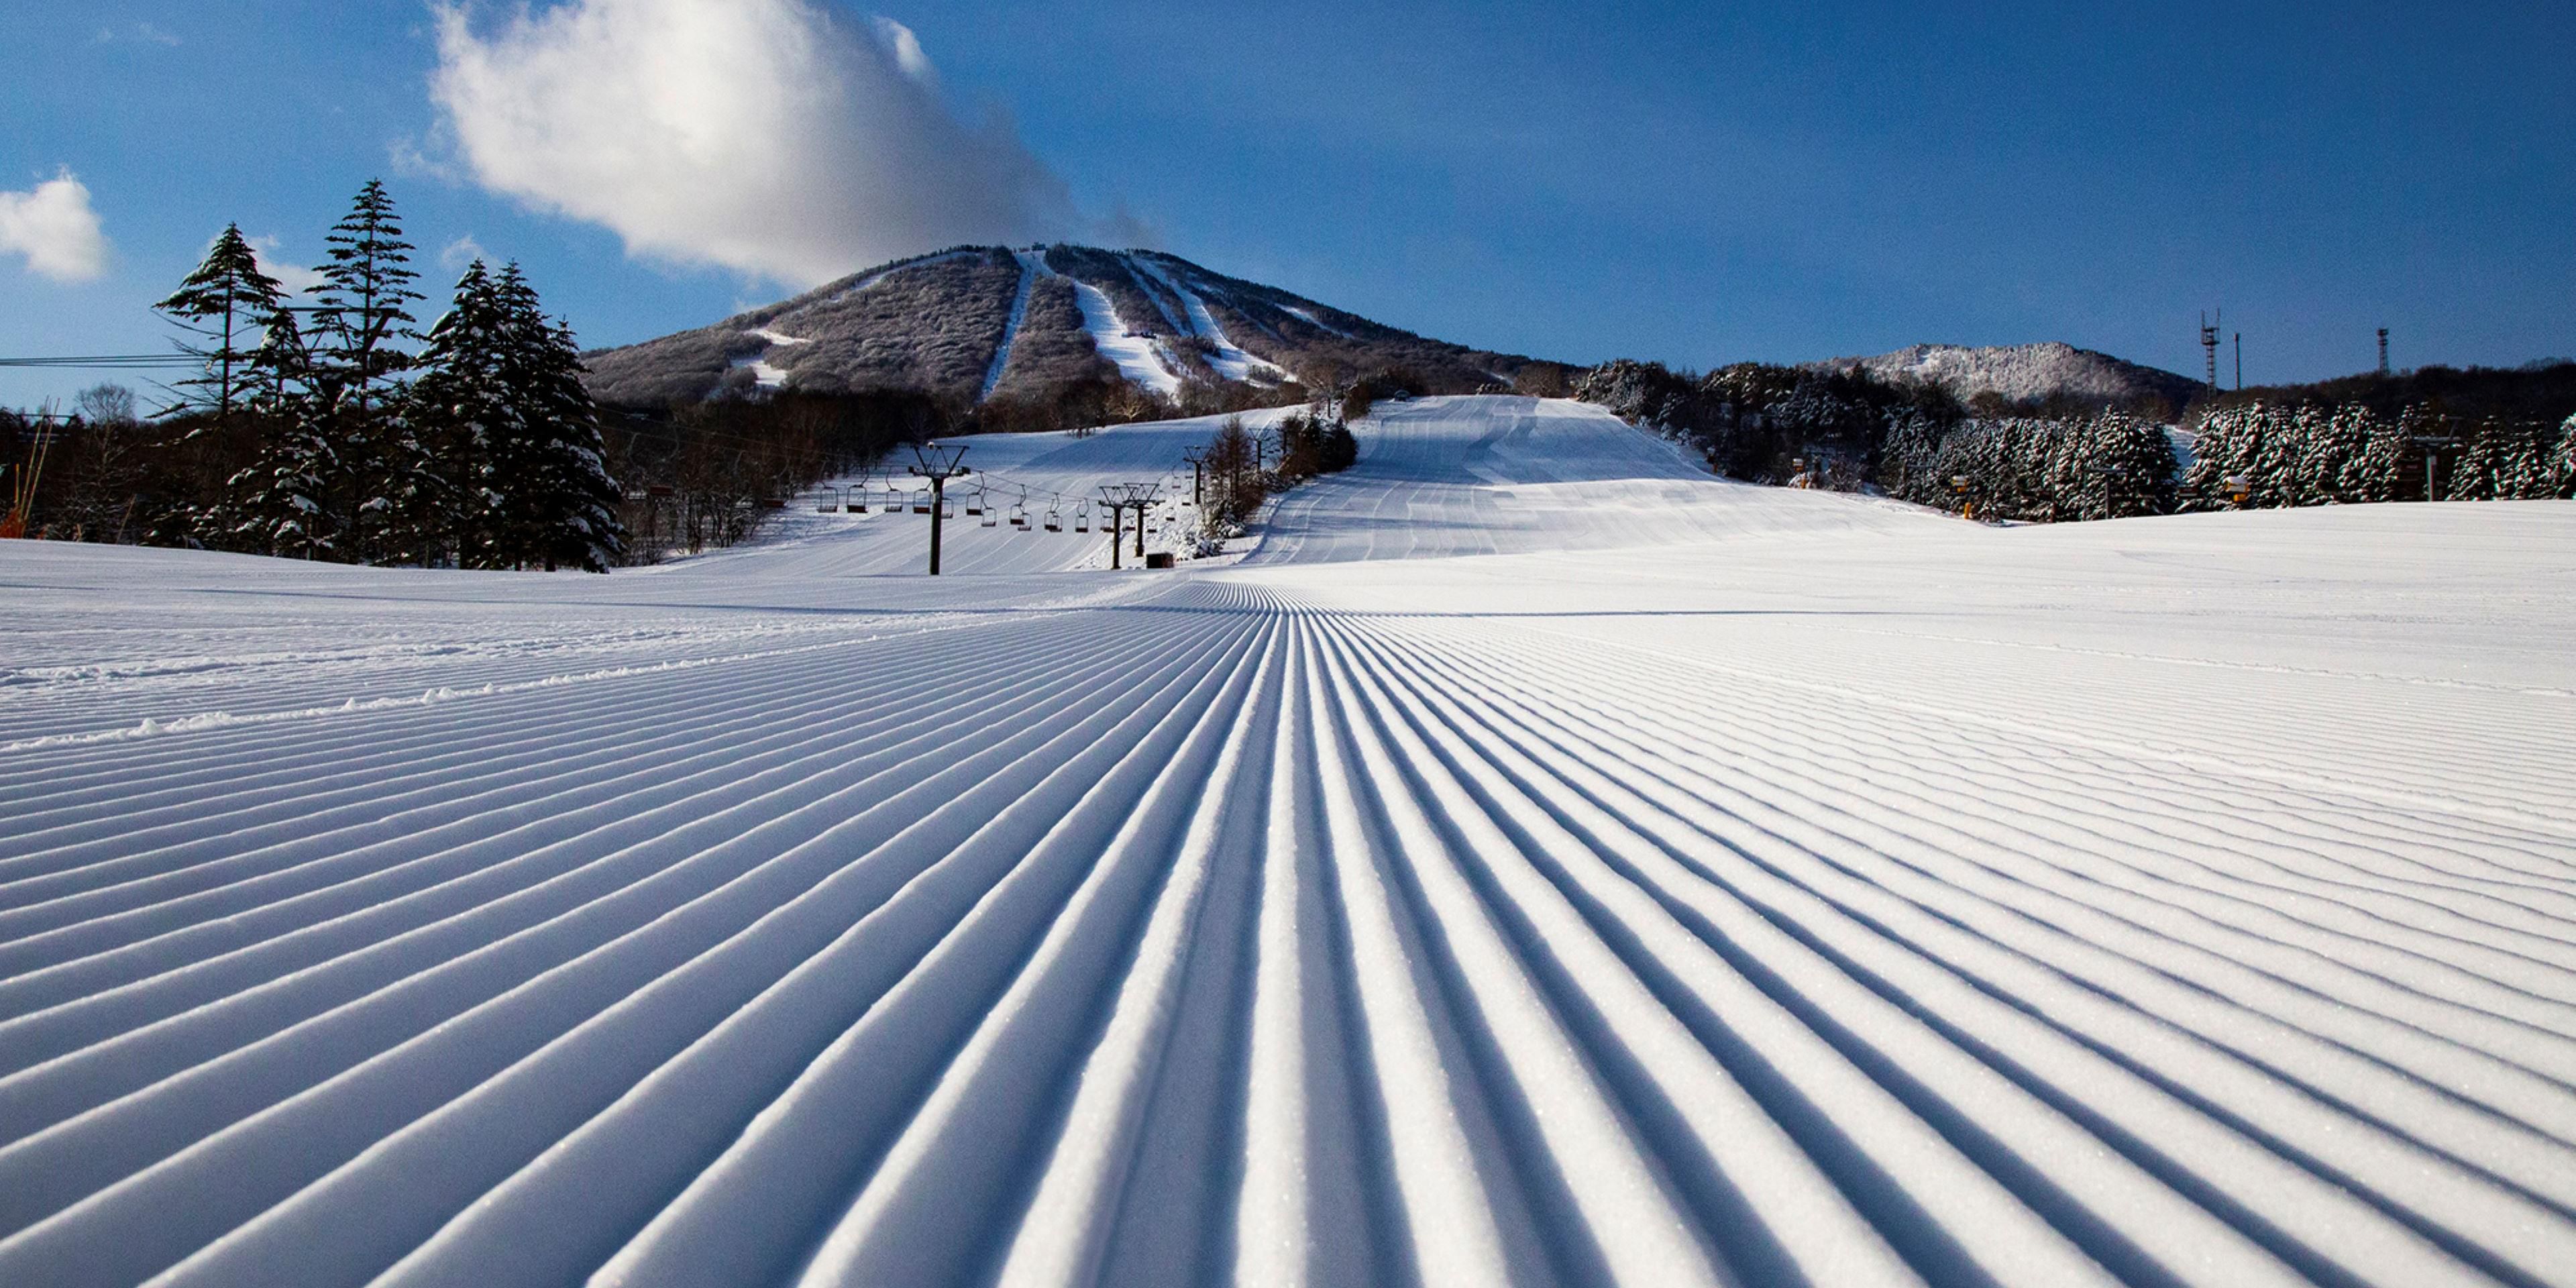 安比高原滑雪場在「WORLD SKI AWARDS 日本最佳滑雪場2022」中榮獲最高獎項。一共21個長雪道，擁有頂級雪質。有適合從初學者到高級滑雪者參加的各種課程，以及用品租借、滑雪學校和餐廳等齊全的設施，適合所有人群都可以體驗到樂趣的高原度假勝地。 ※滑雪場計劃於12月開放。